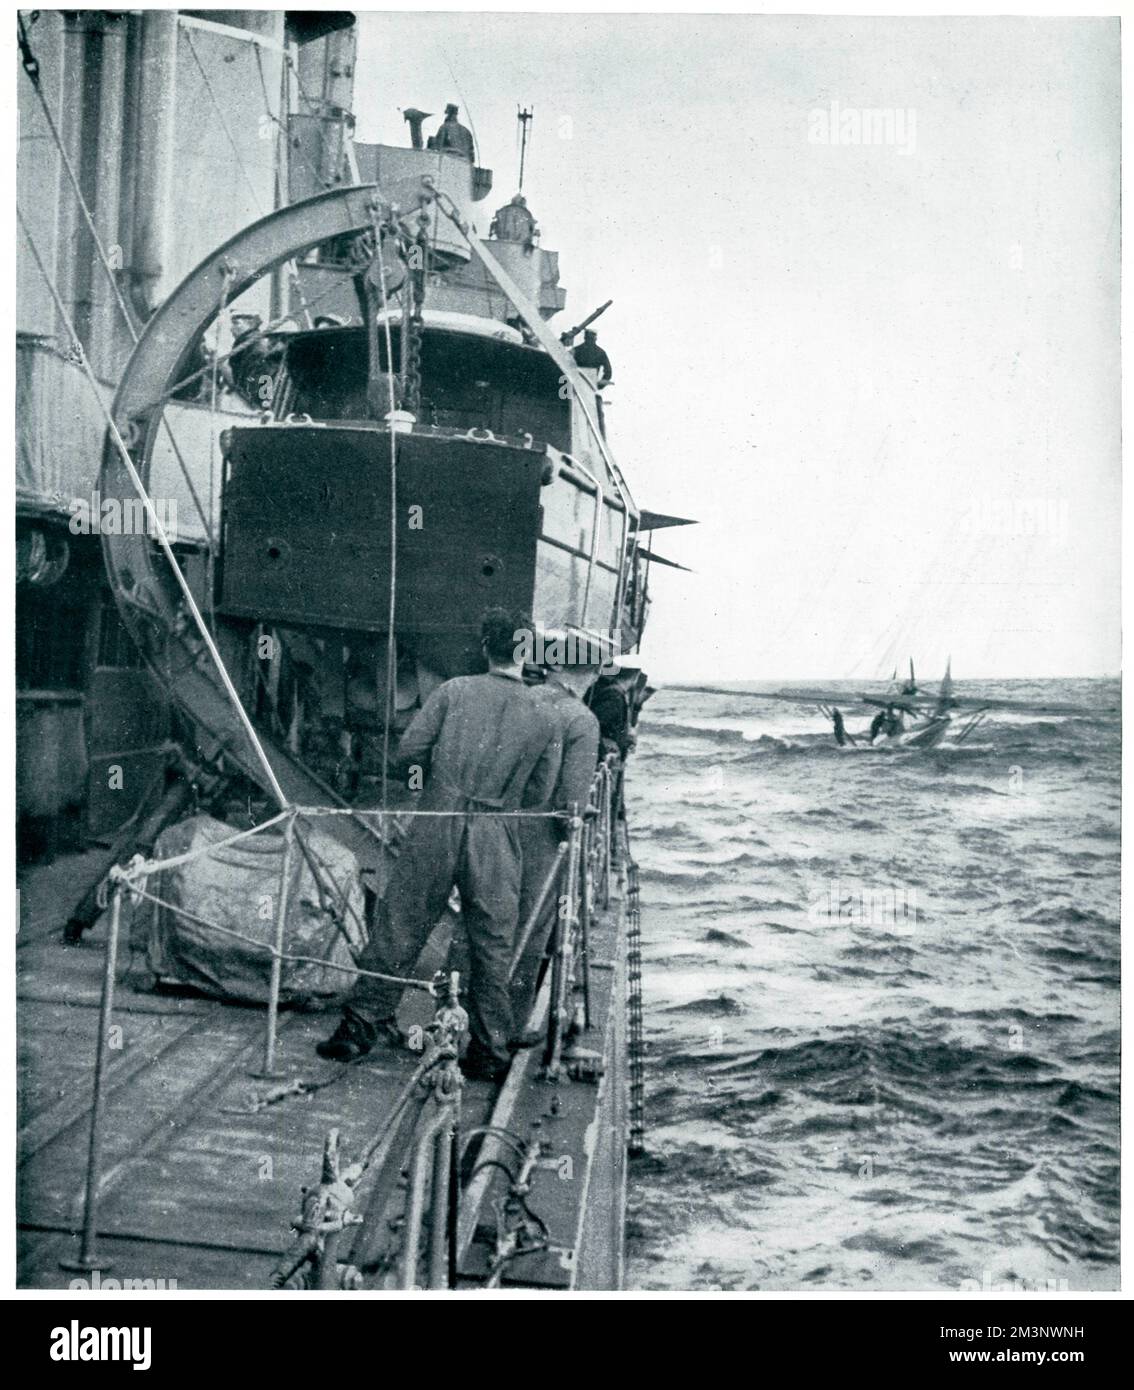 Eine Szene in der Nordsee, in der die Besatzung eines deutschen Flugboots gezeigt wird, das an einem Luftangriff auf Schiffe der britischen Flotte teilgenommen hatte, die darauf warteten, von einem britischen Zerstörer gerettet zu werden, nachdem er nach einer fünfstündigen Aktion gestürzt wurde. Der Bombenleger kam ins Meer, die Crew ging zu ihrem zusammenklappbaren Gummischiff und wurde dann gerettet. Das deutsche Flugzeug wurde dann durch Schüsse versenkt. Datum: 1939 Stockfoto